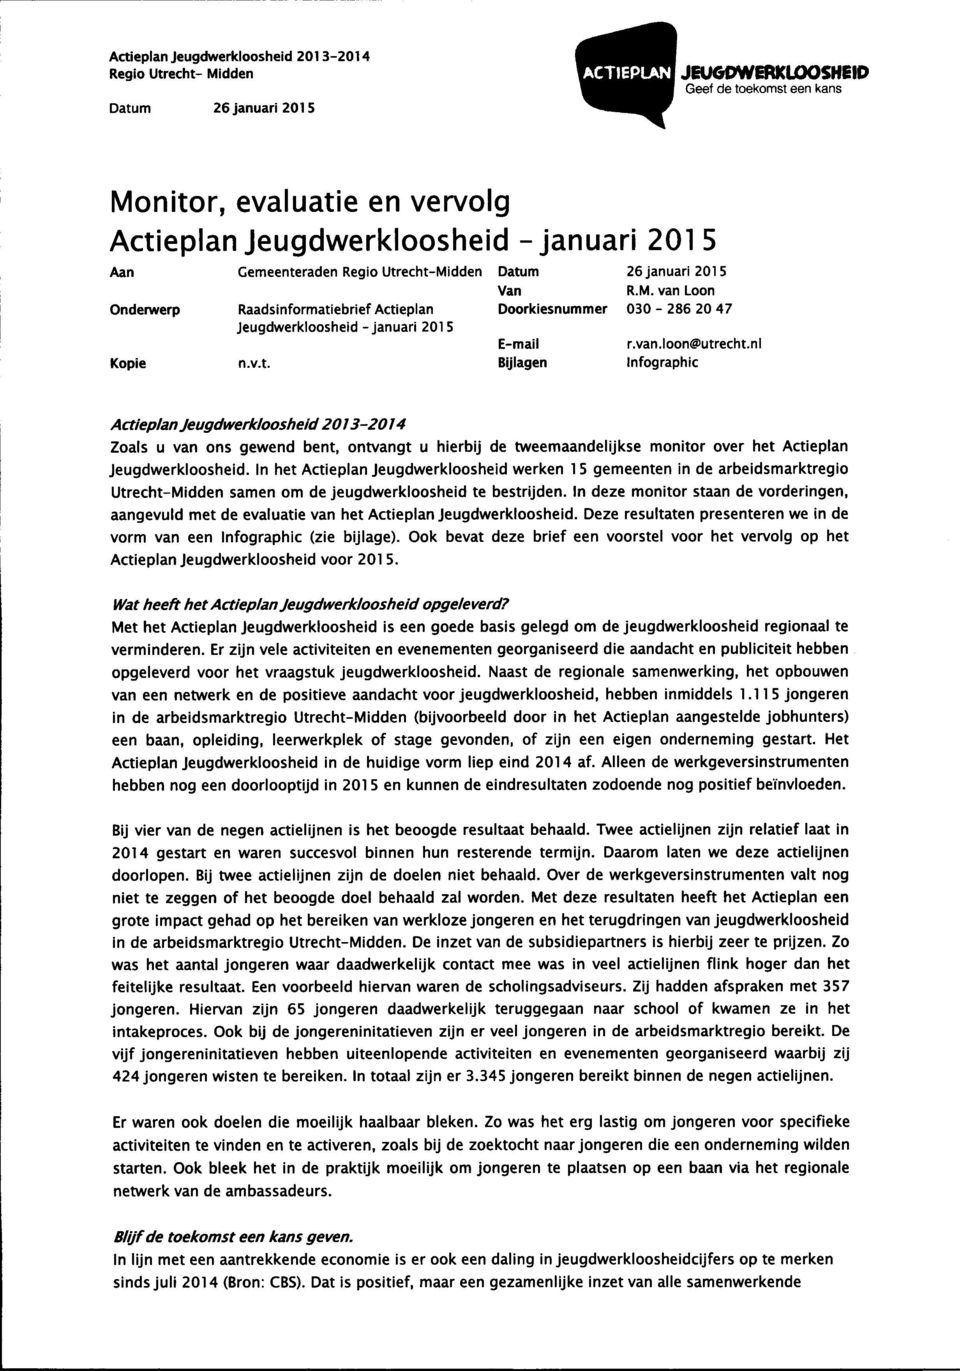 In het Actieplan Jeugdwerkloosheid werken 15 gemeenten in de arbeidsmarktregio Utrecht-Midden samen om de jeugdwerkloosheid te bestrijden.